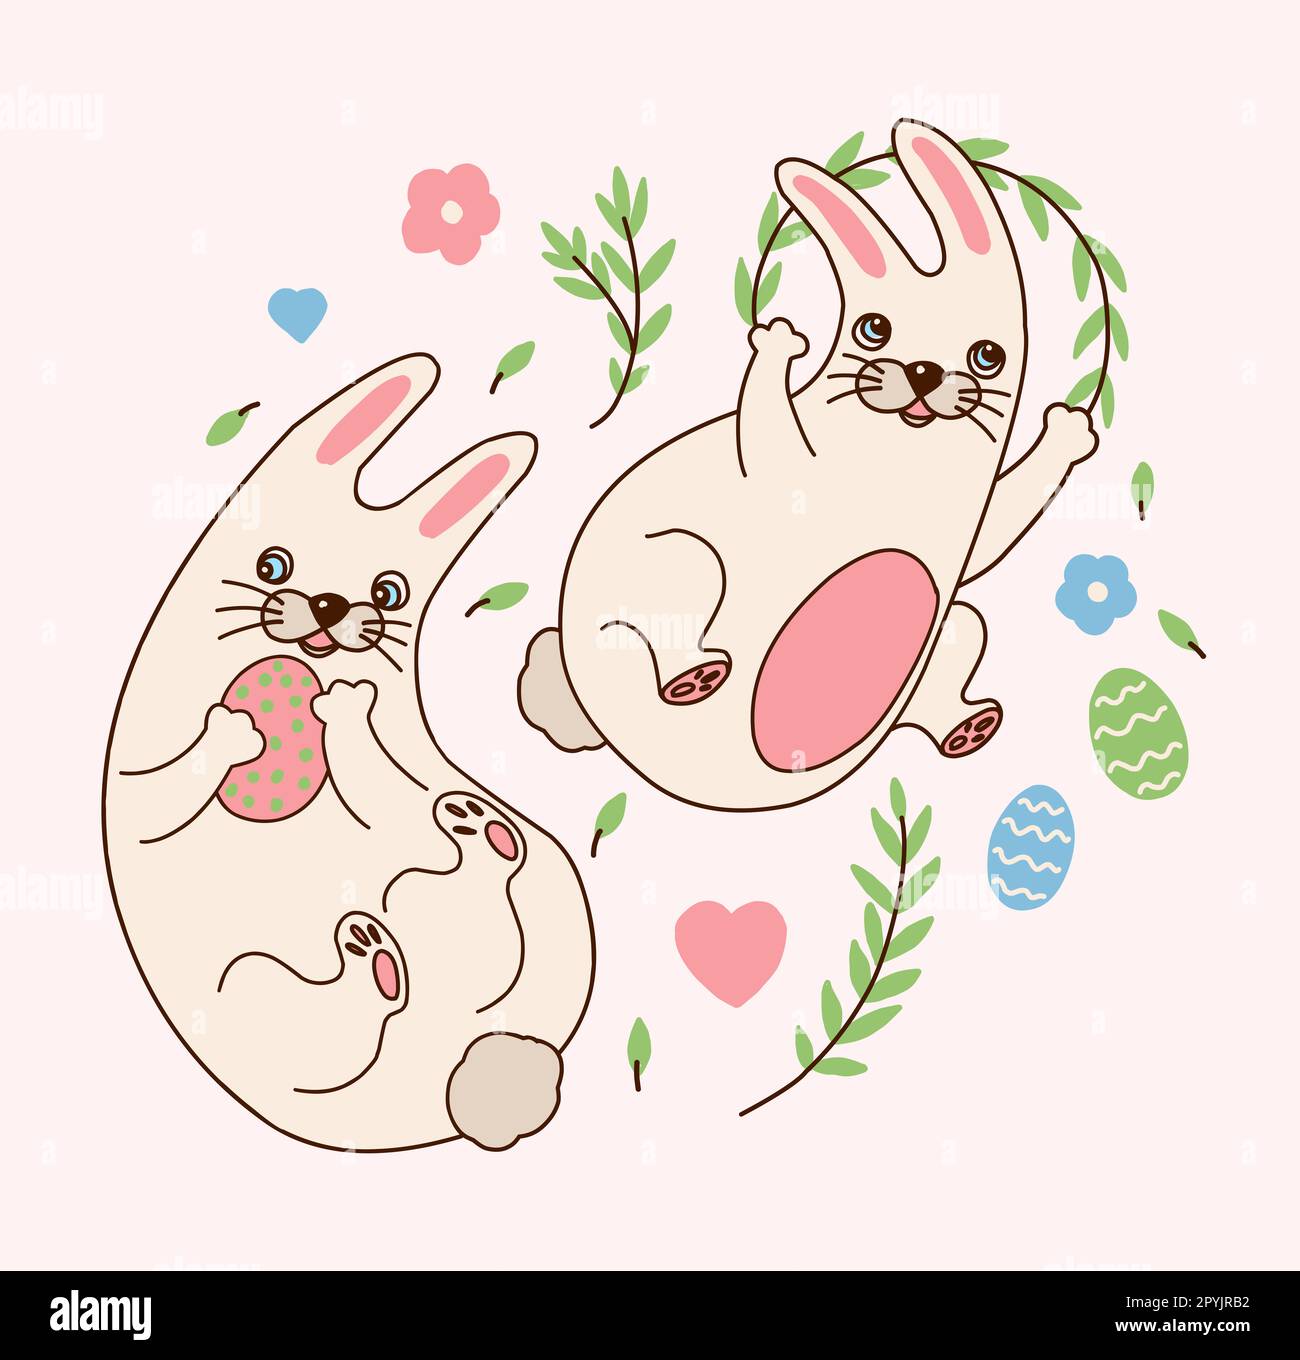 un adorable sticker de lapin en forme de childish kawaii. Lapins avec œufs de Pâques, brindilles et fleurs. Affiche de lapin drôle. Décor de Pâques Banque D'Images